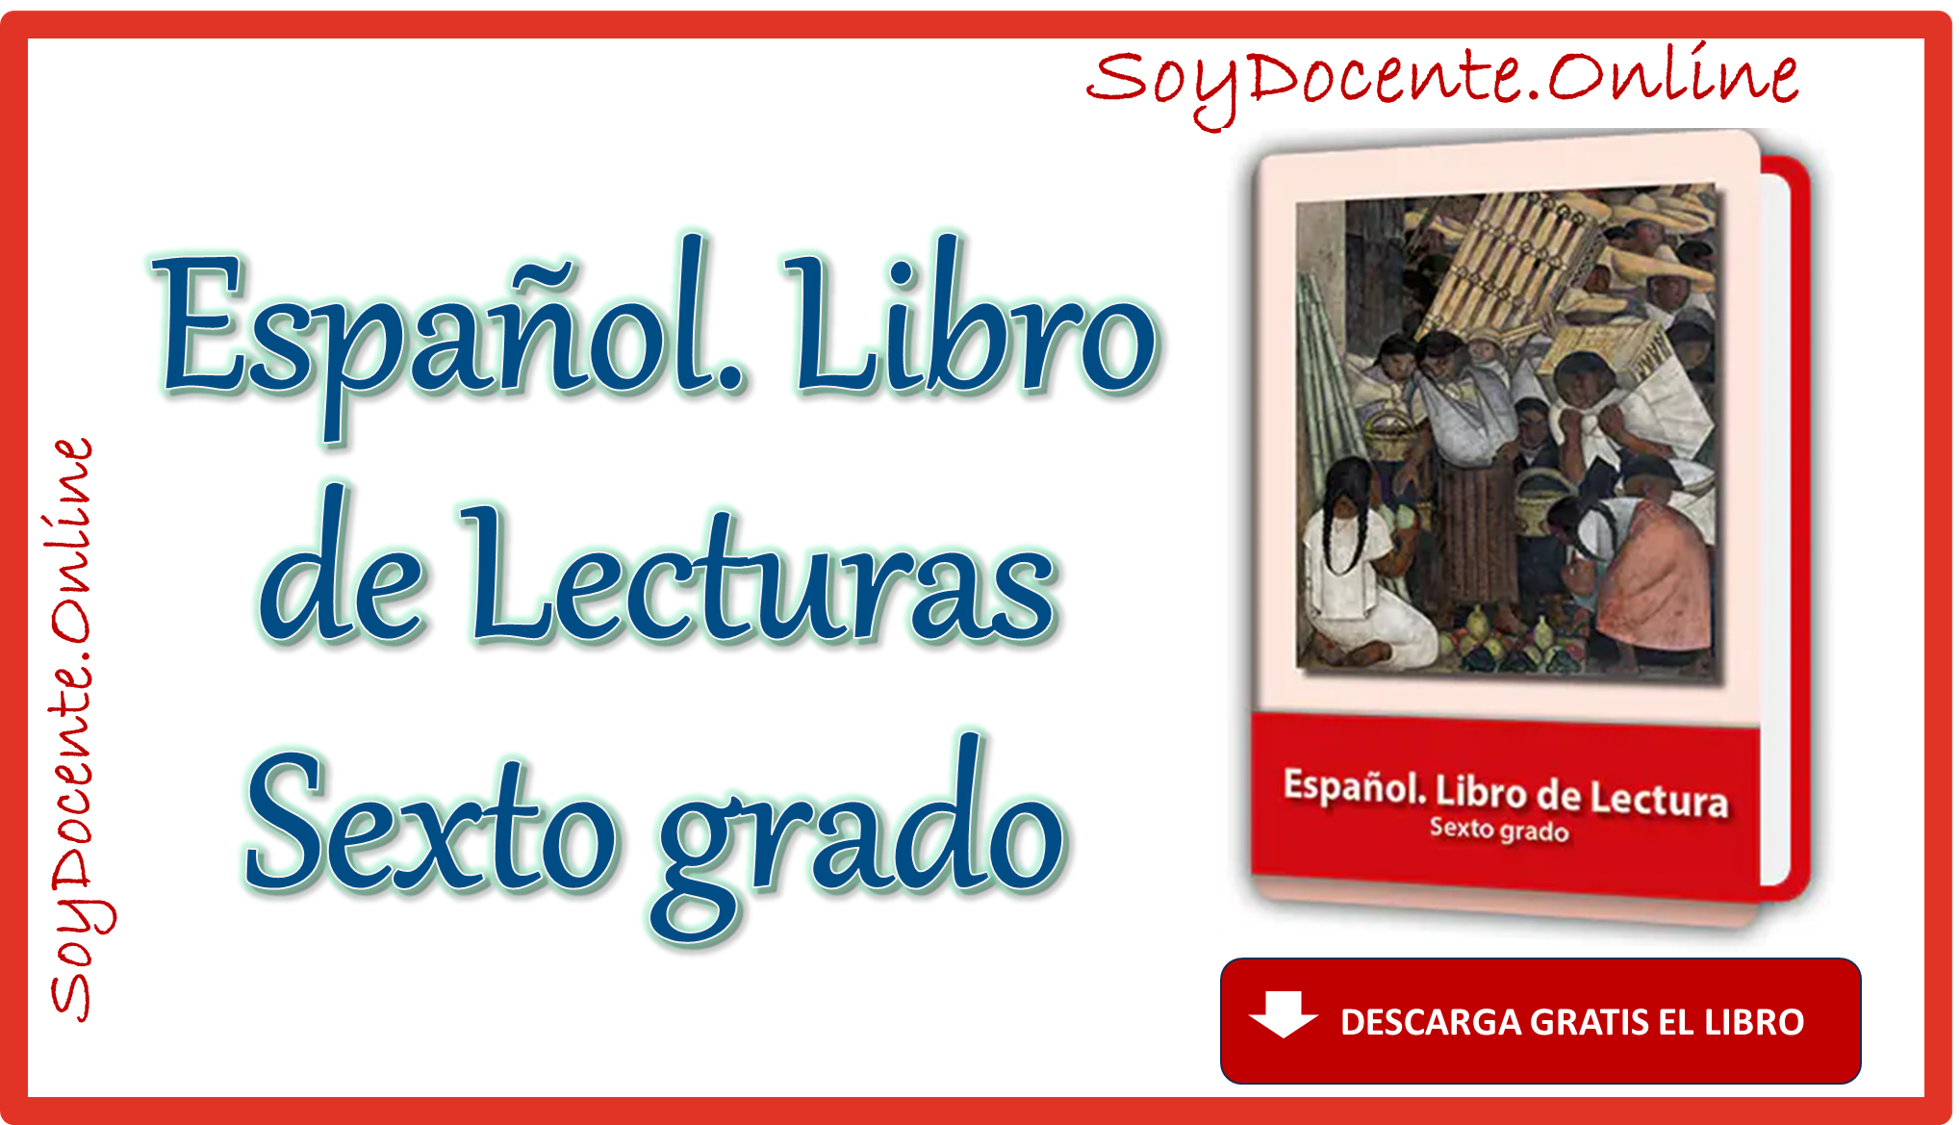 Descarga Español.Libro de Lecturas sexto grado de Primaria obra oficial de la SEP, distribuido por la CONALITEG, ahora en PDF, gratis.